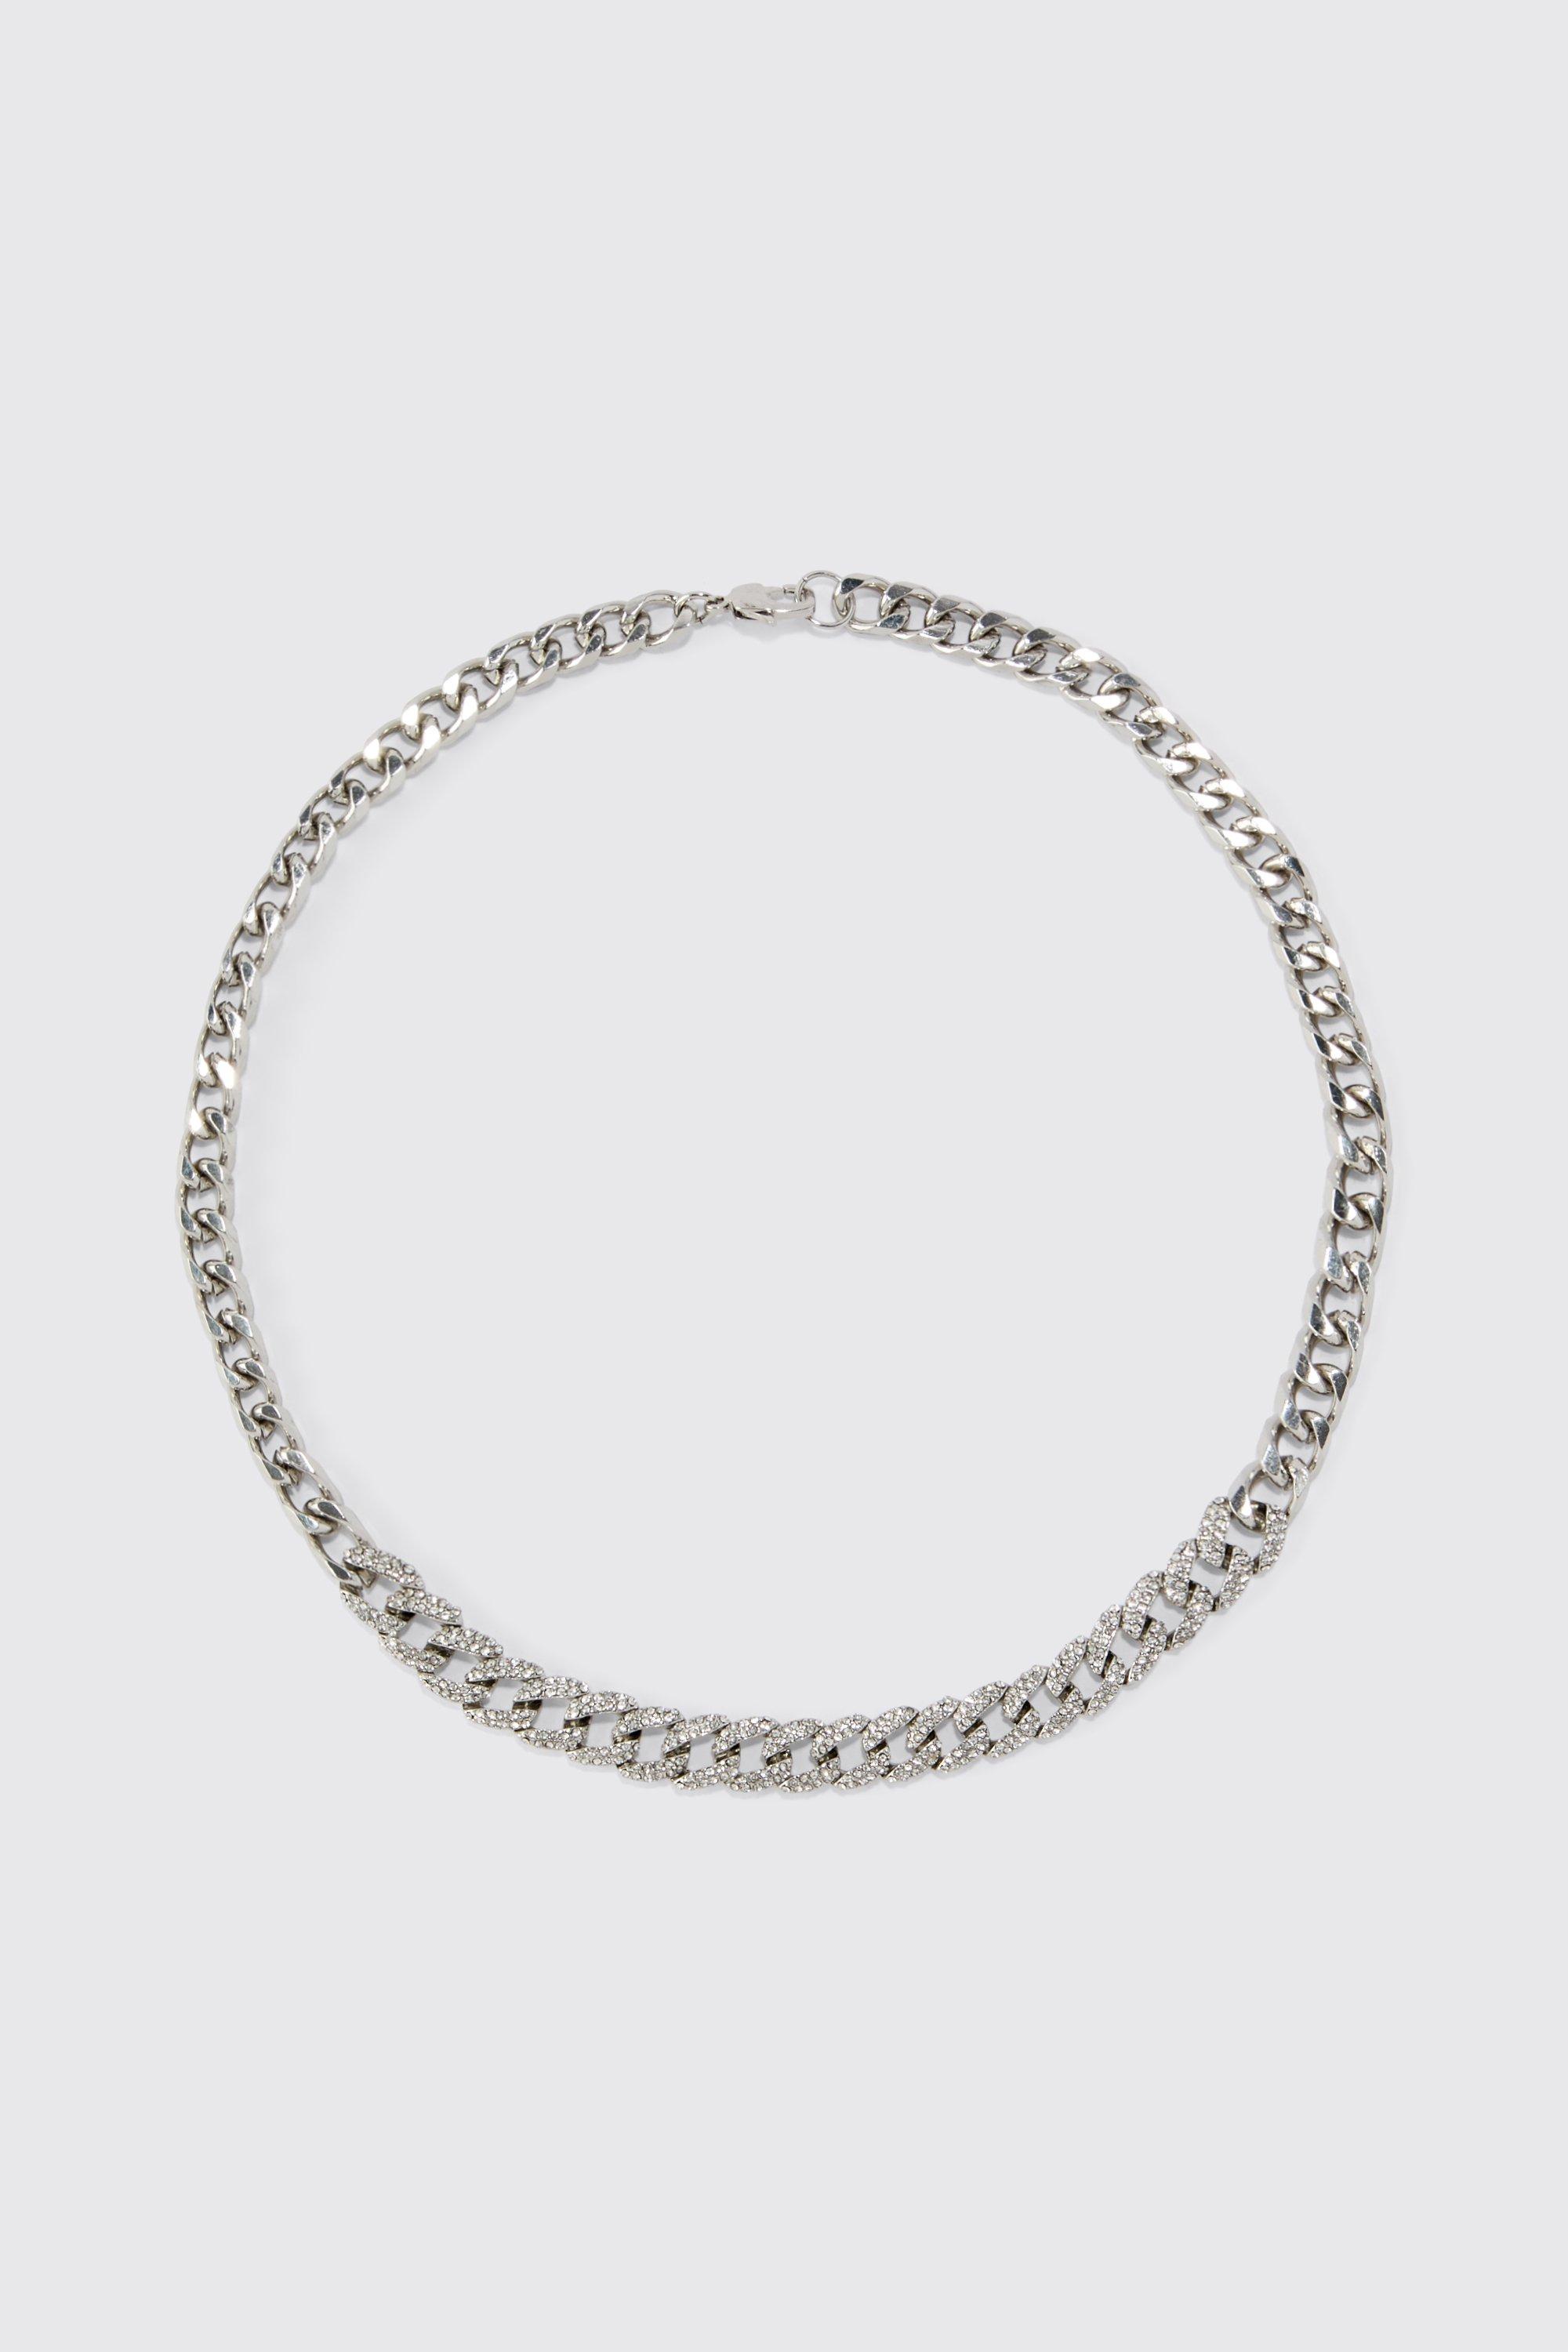 collier en chaîne strassée homme - argent - one size, argent